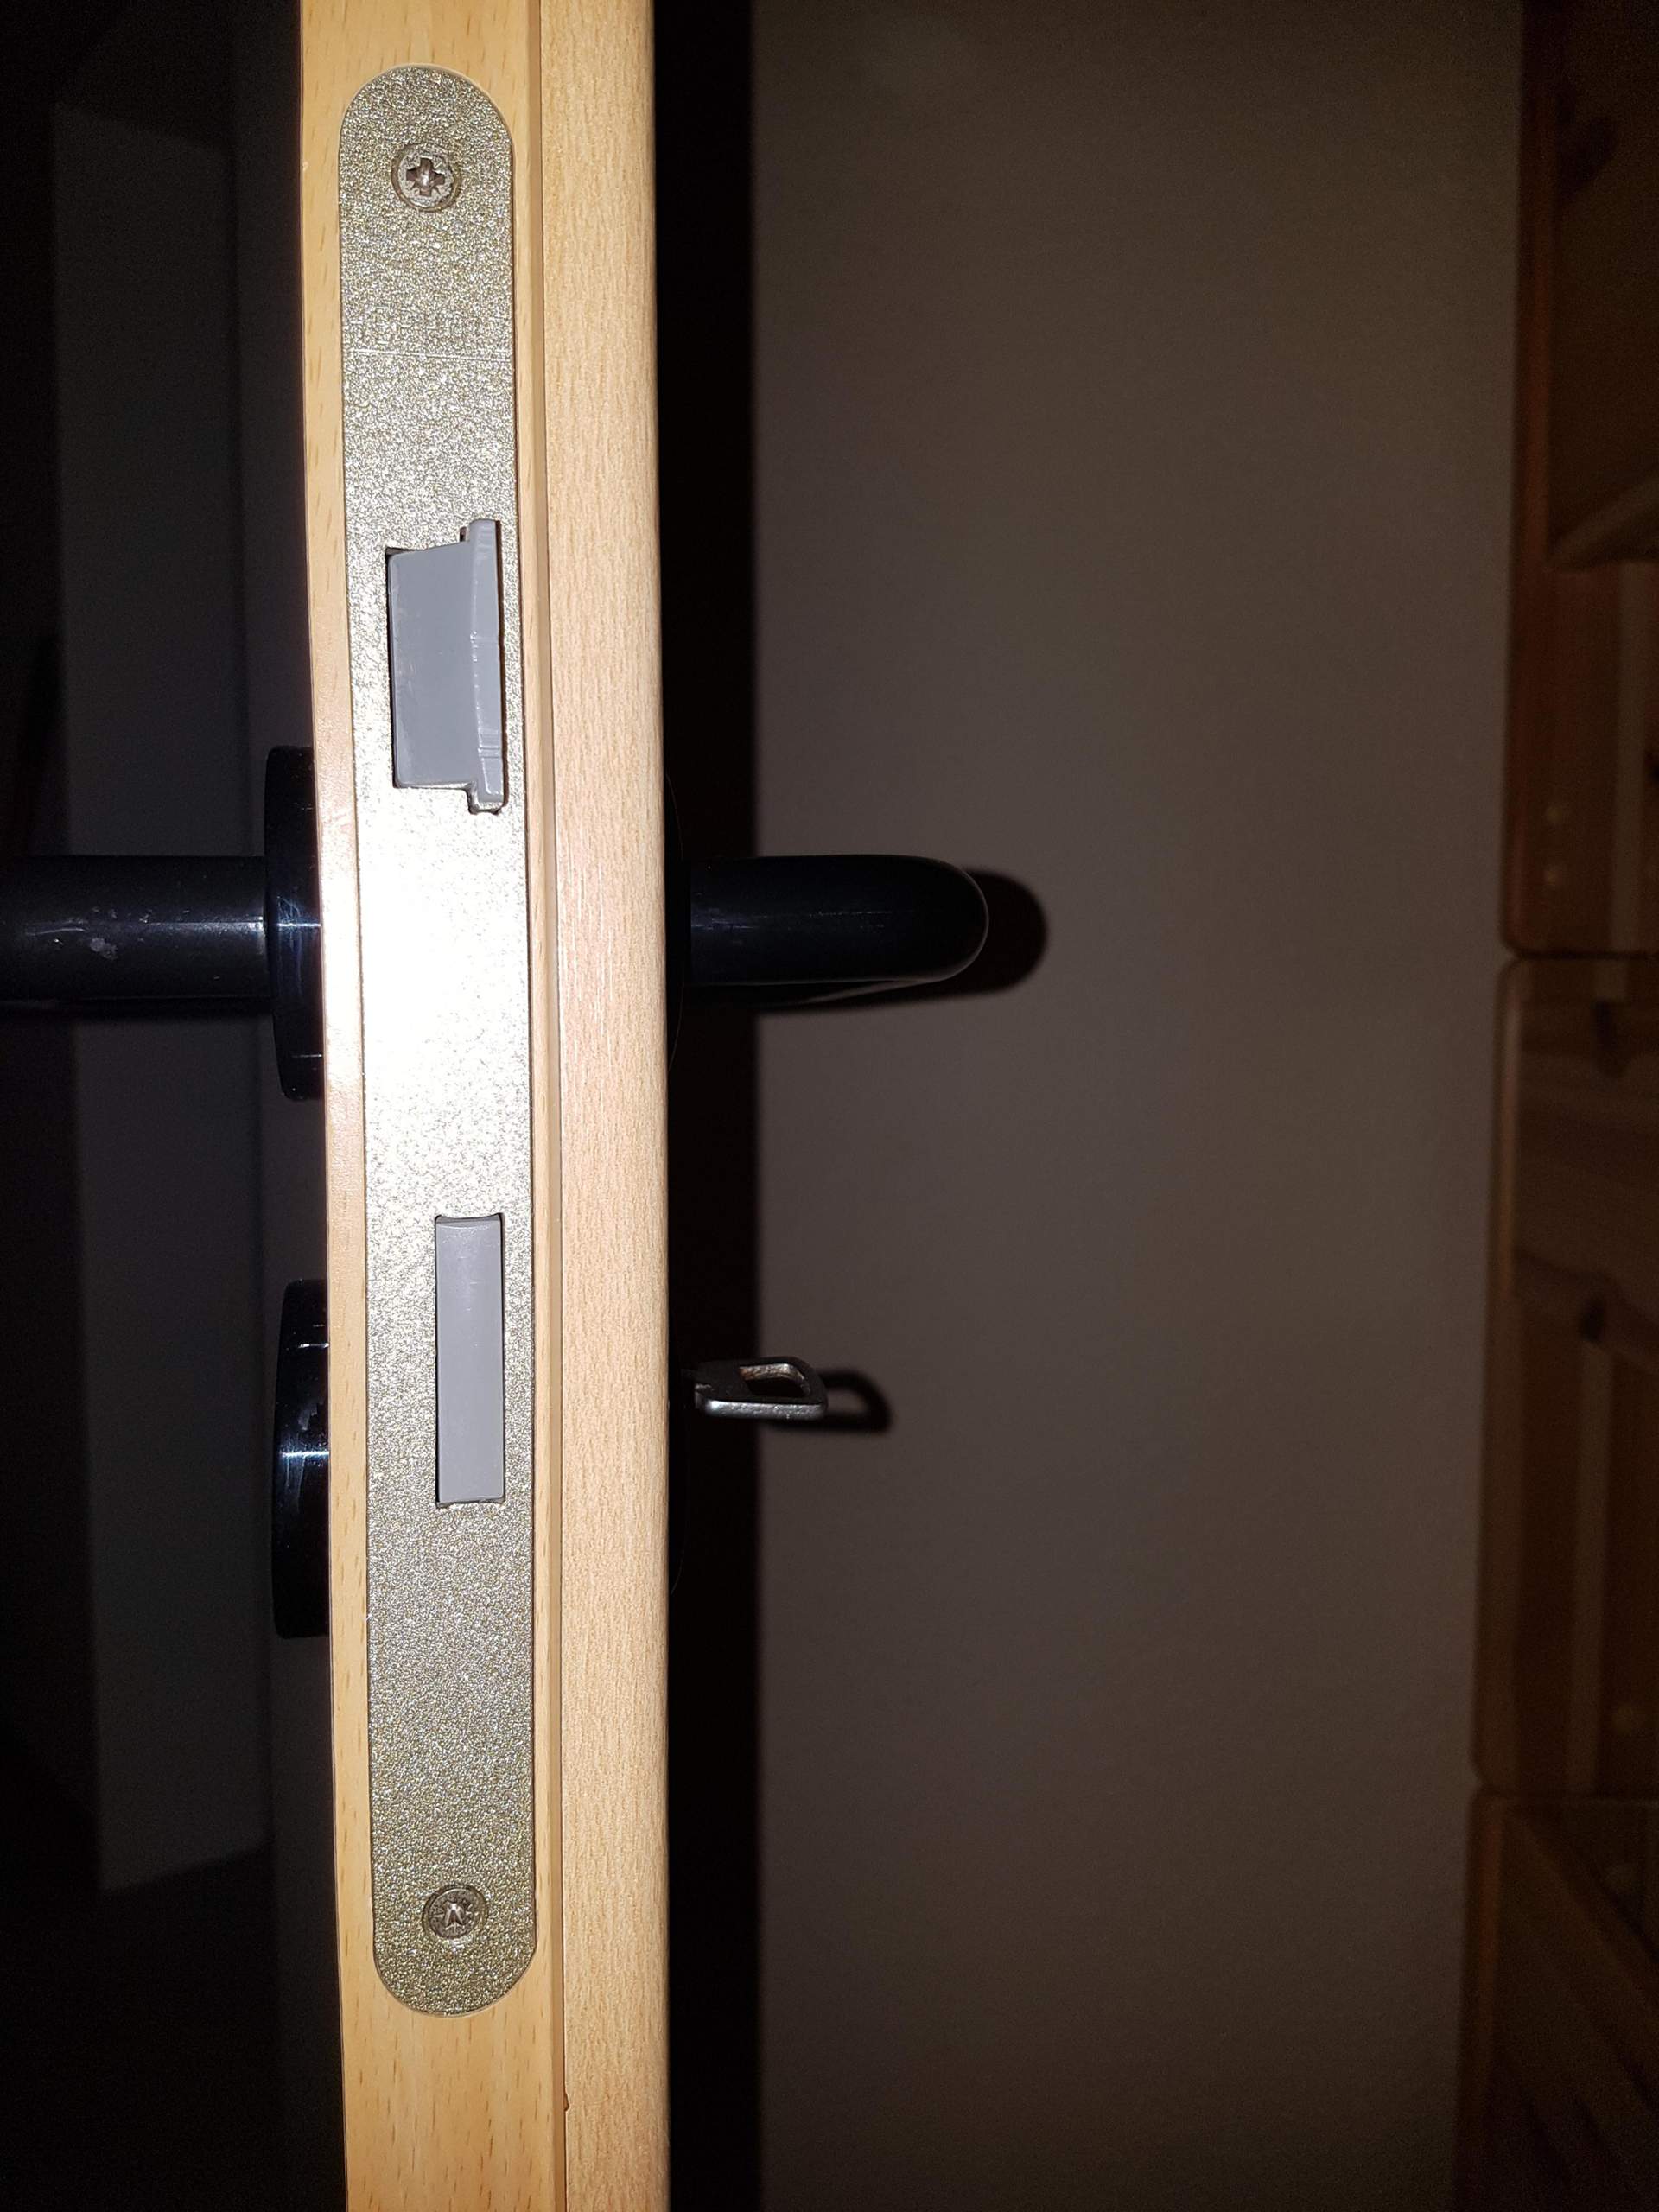 Sind alle Zimmertüren Einsteckschlösser gleich? (Haus, Handwerk, Tür)